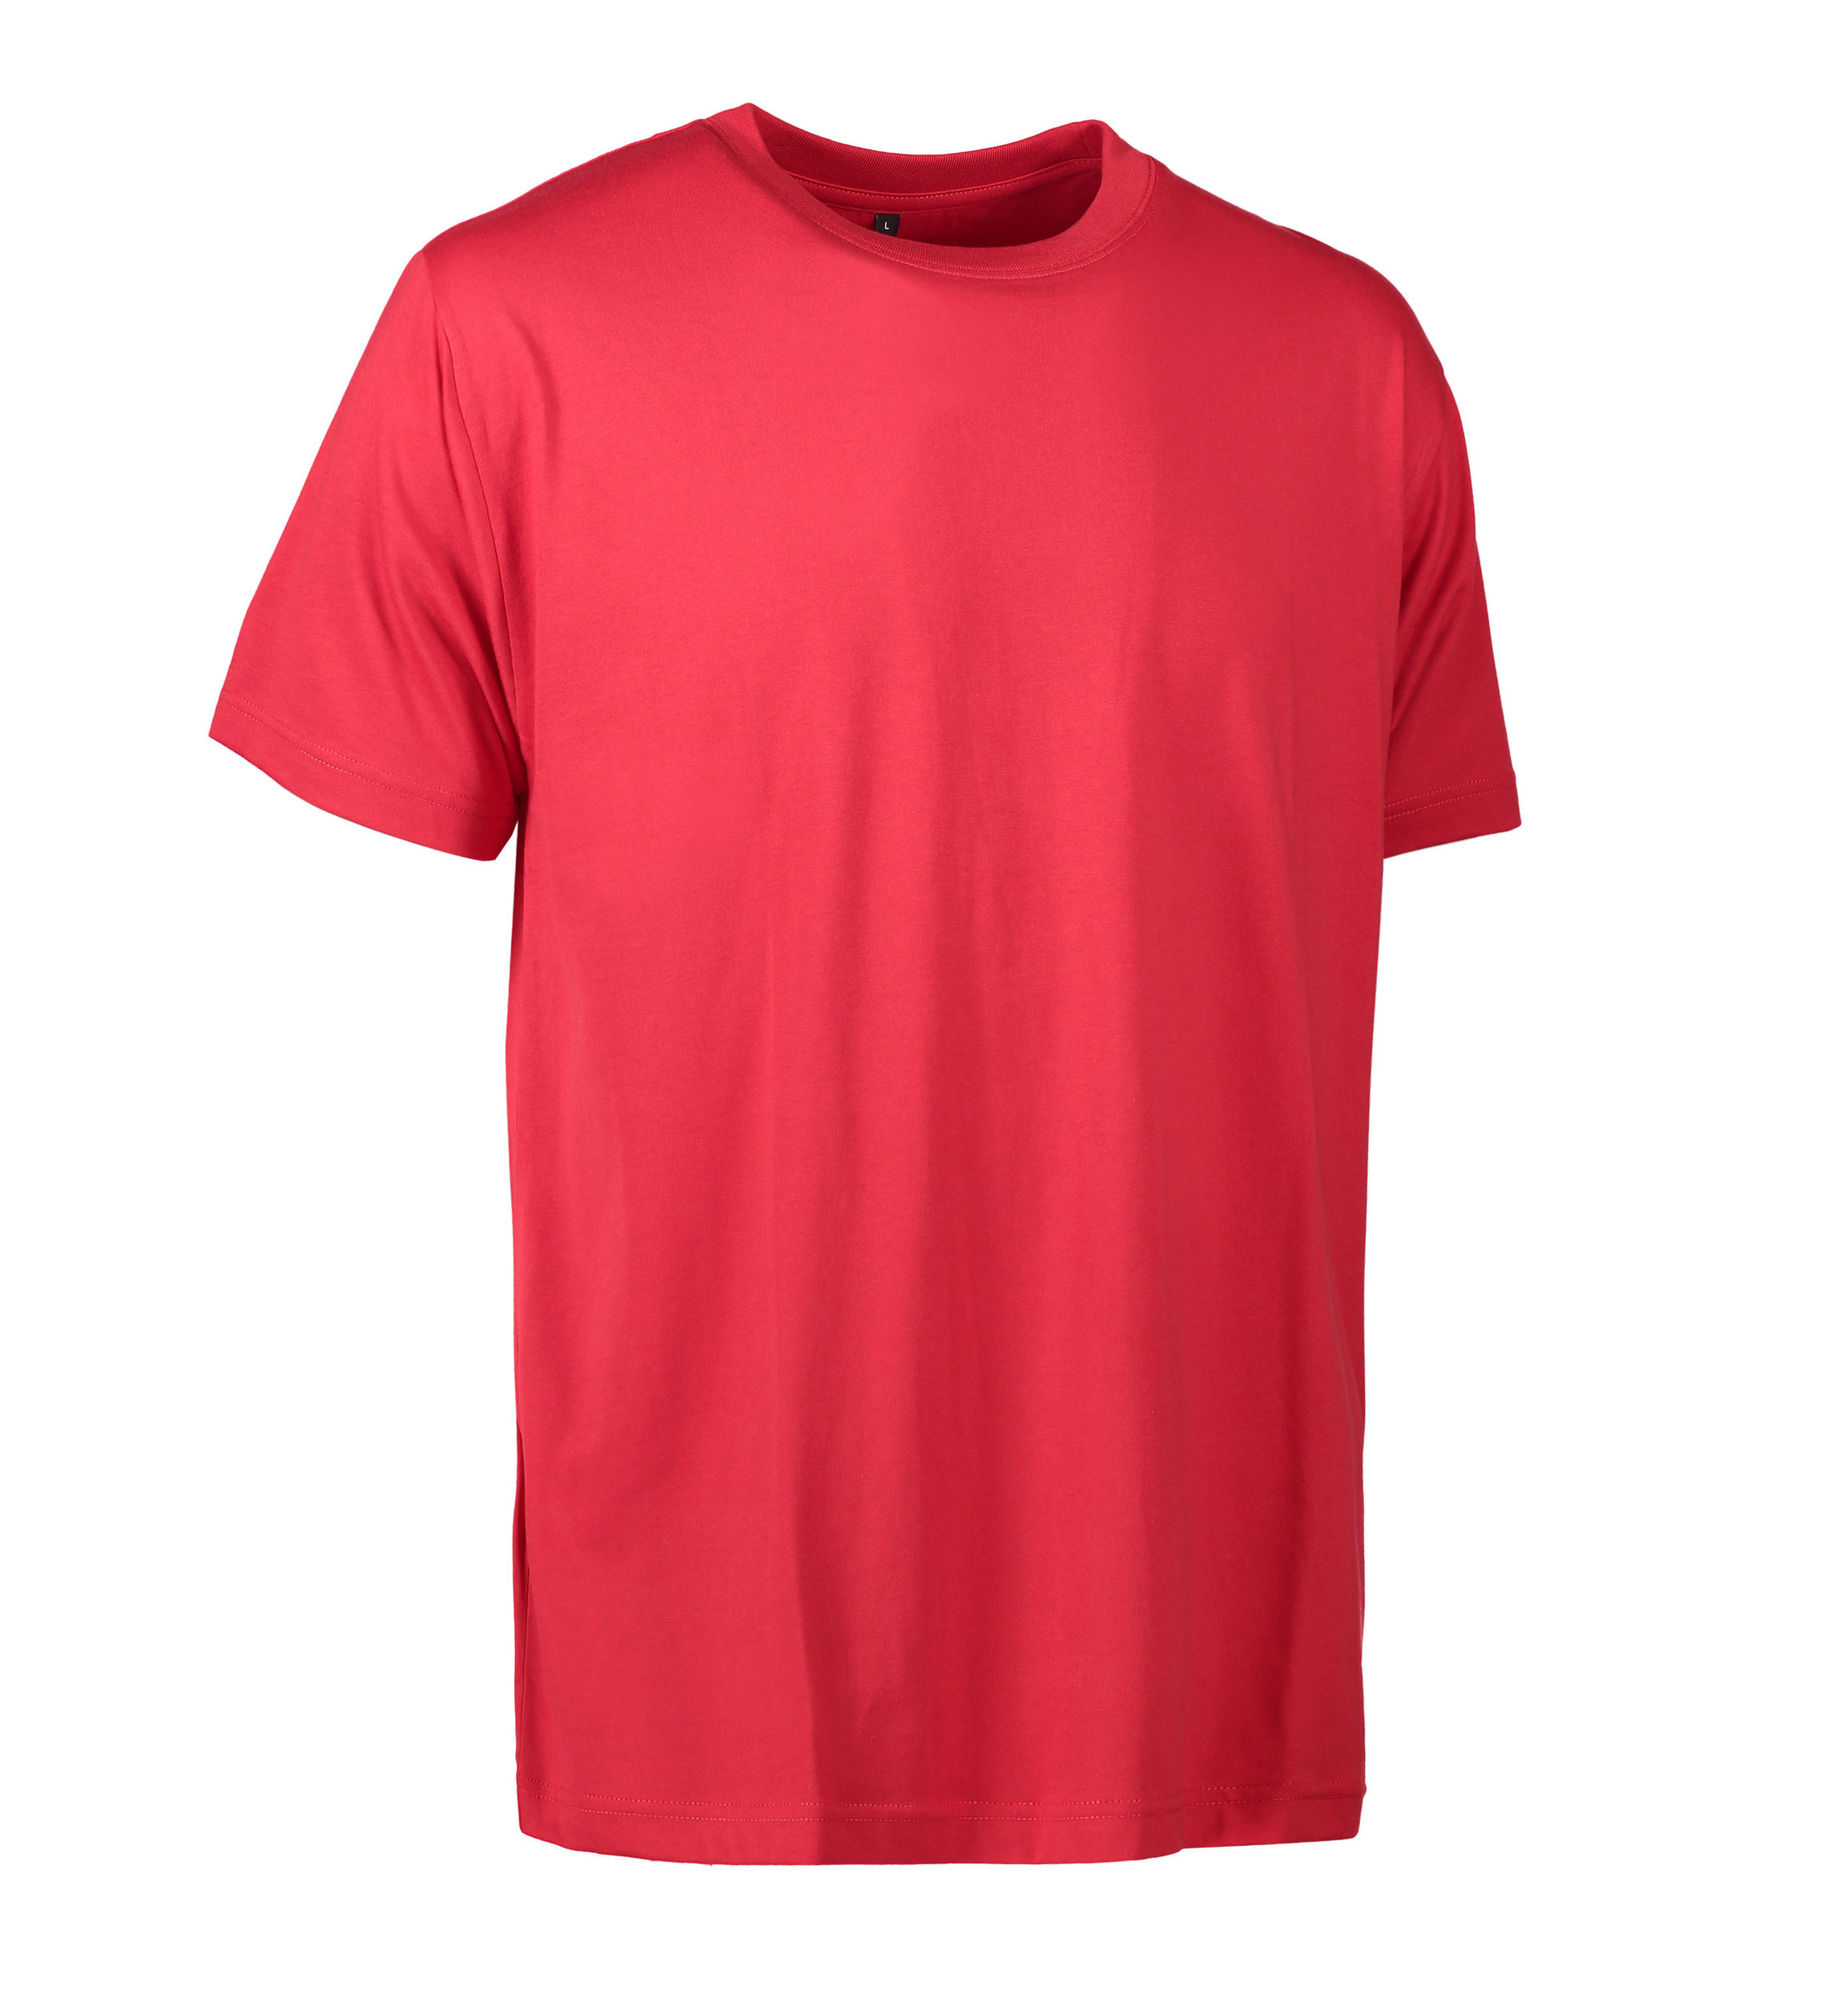 Billede af Slidstærk t-shirt i rød til mænd - L hos Sygeplejebutikken.dk